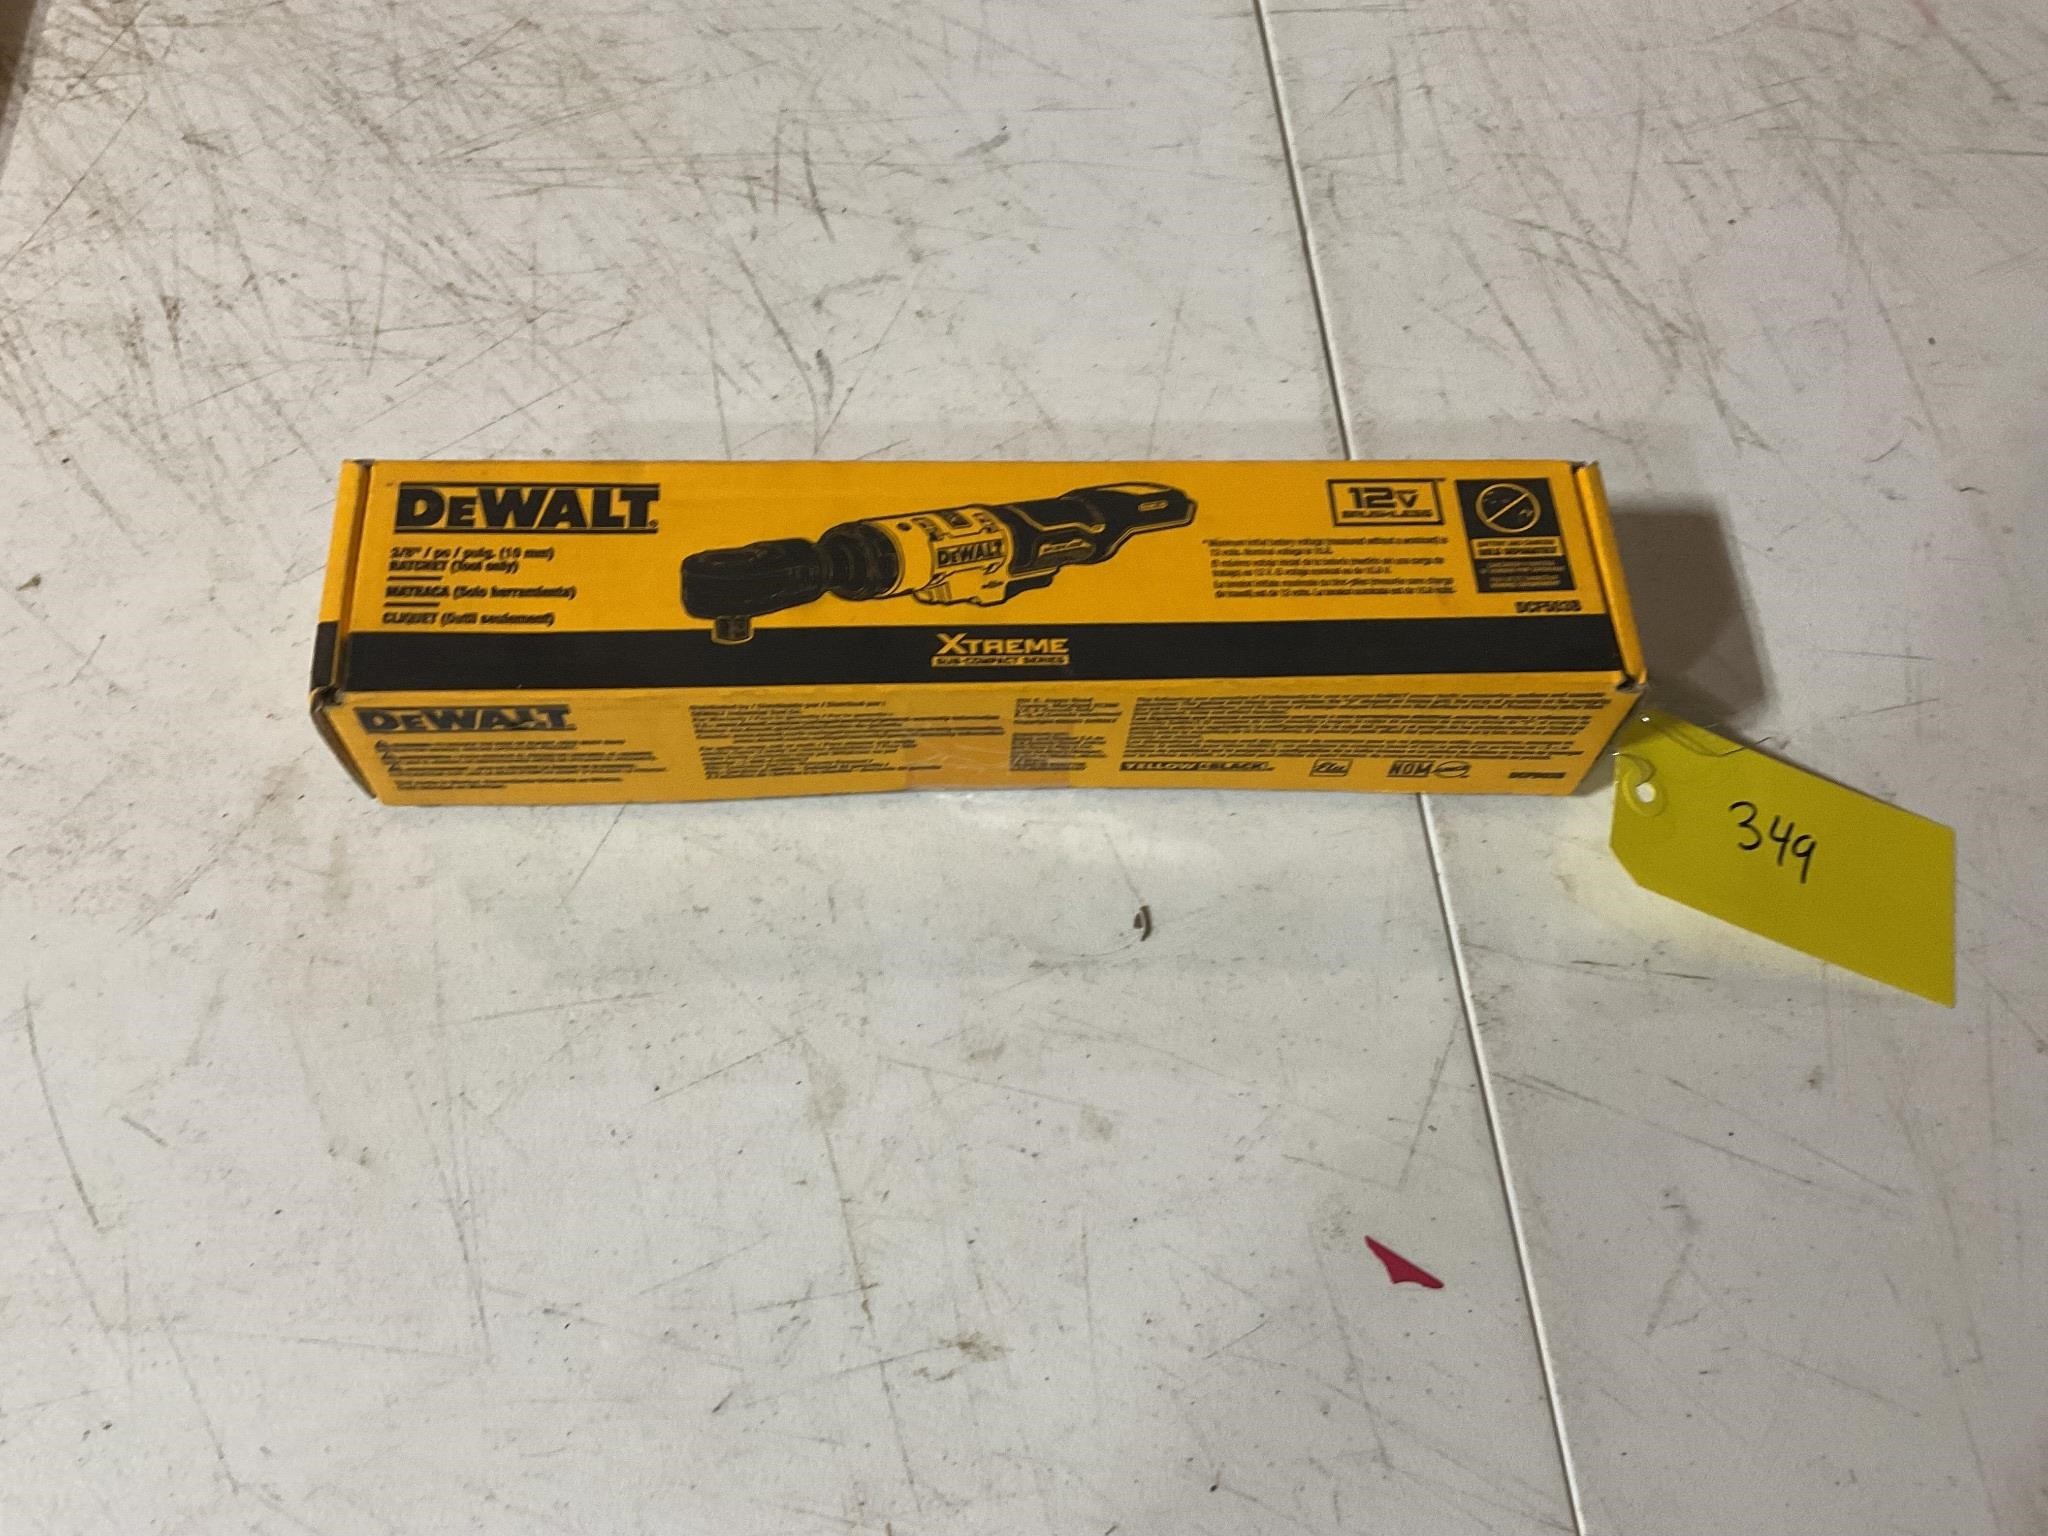 DeWalt 12 V 3/8 inch ratchet tool only